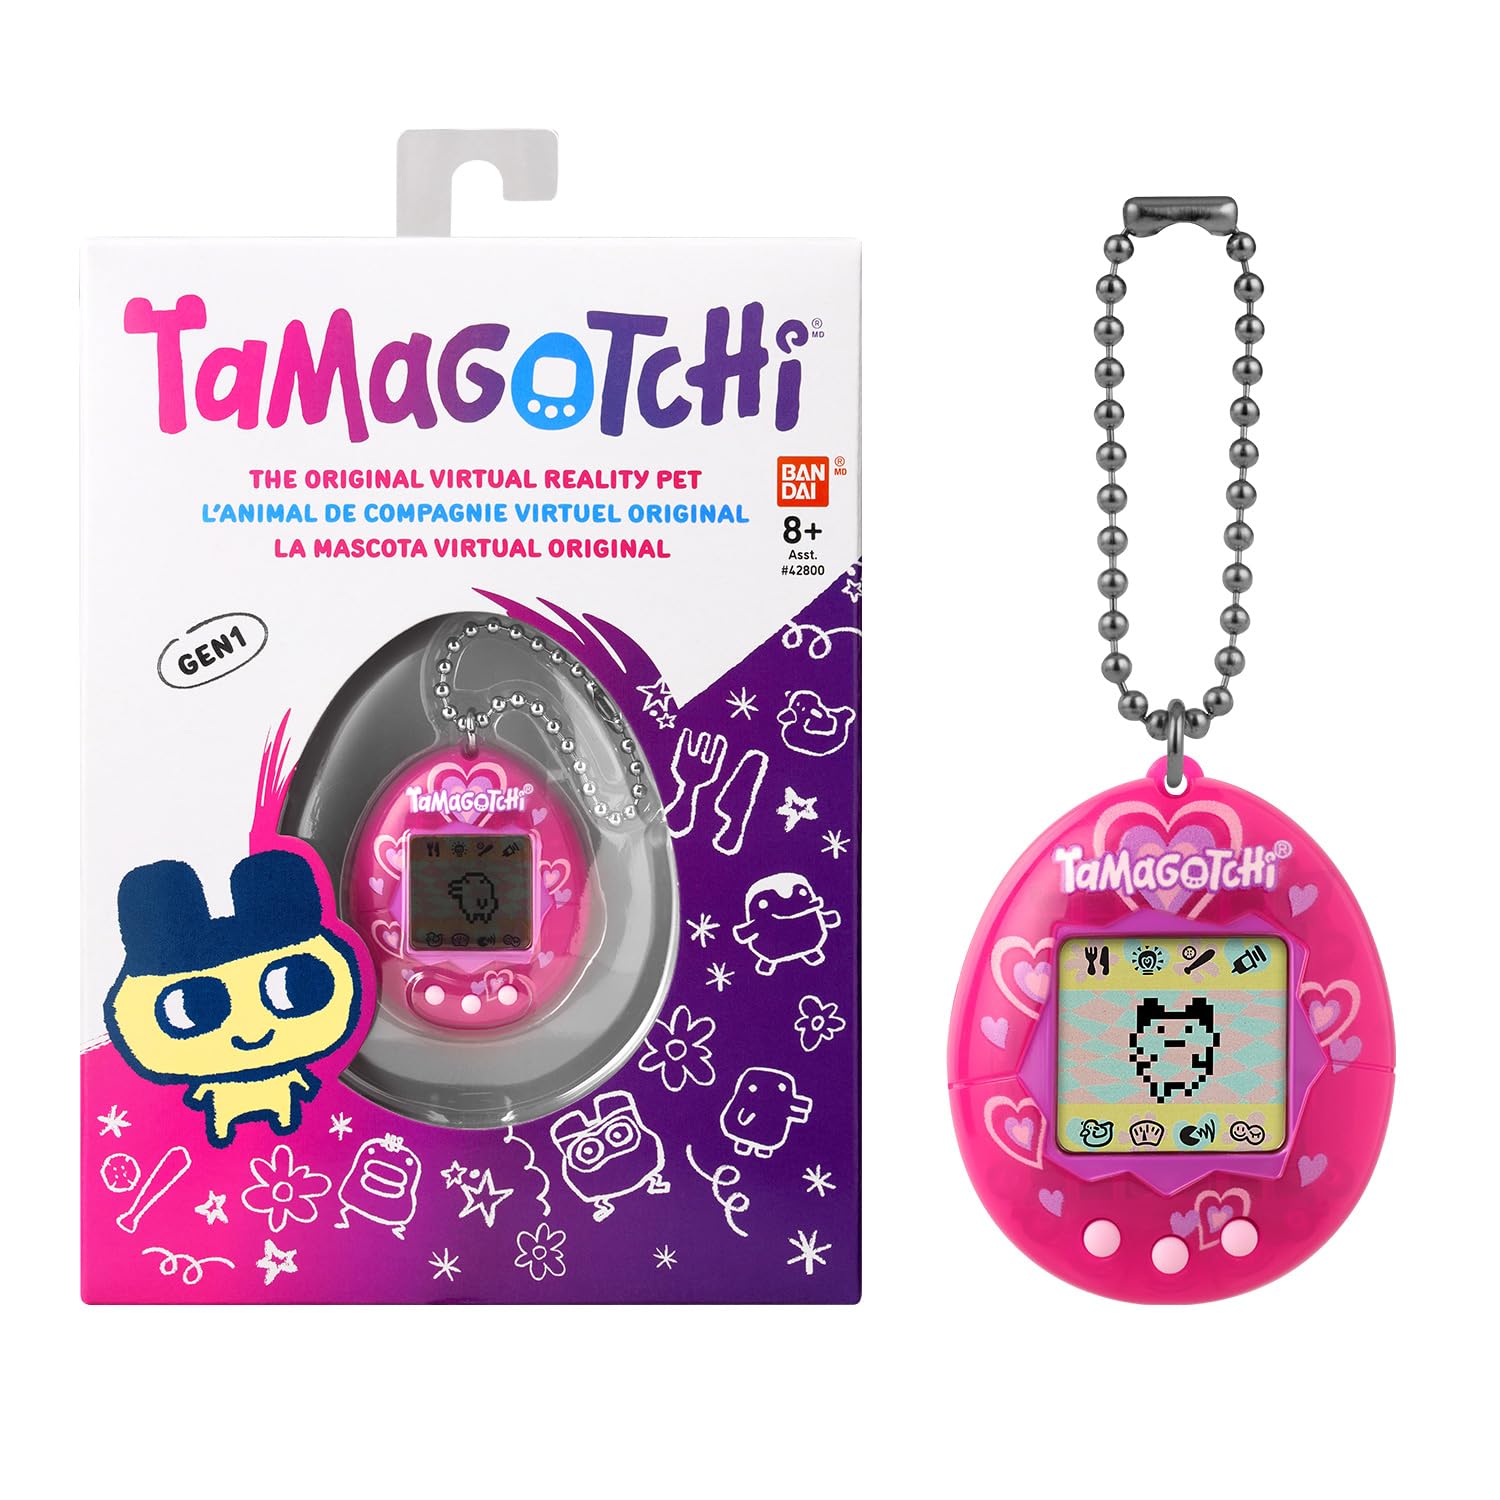 Magnifique Bandai - Tamagotchi - Tamagotchi original - Lots of love - animal électronique virtuel avec écran couleur, 3 boutons et jeux - 42975 pf2btNmi6 bien vendre